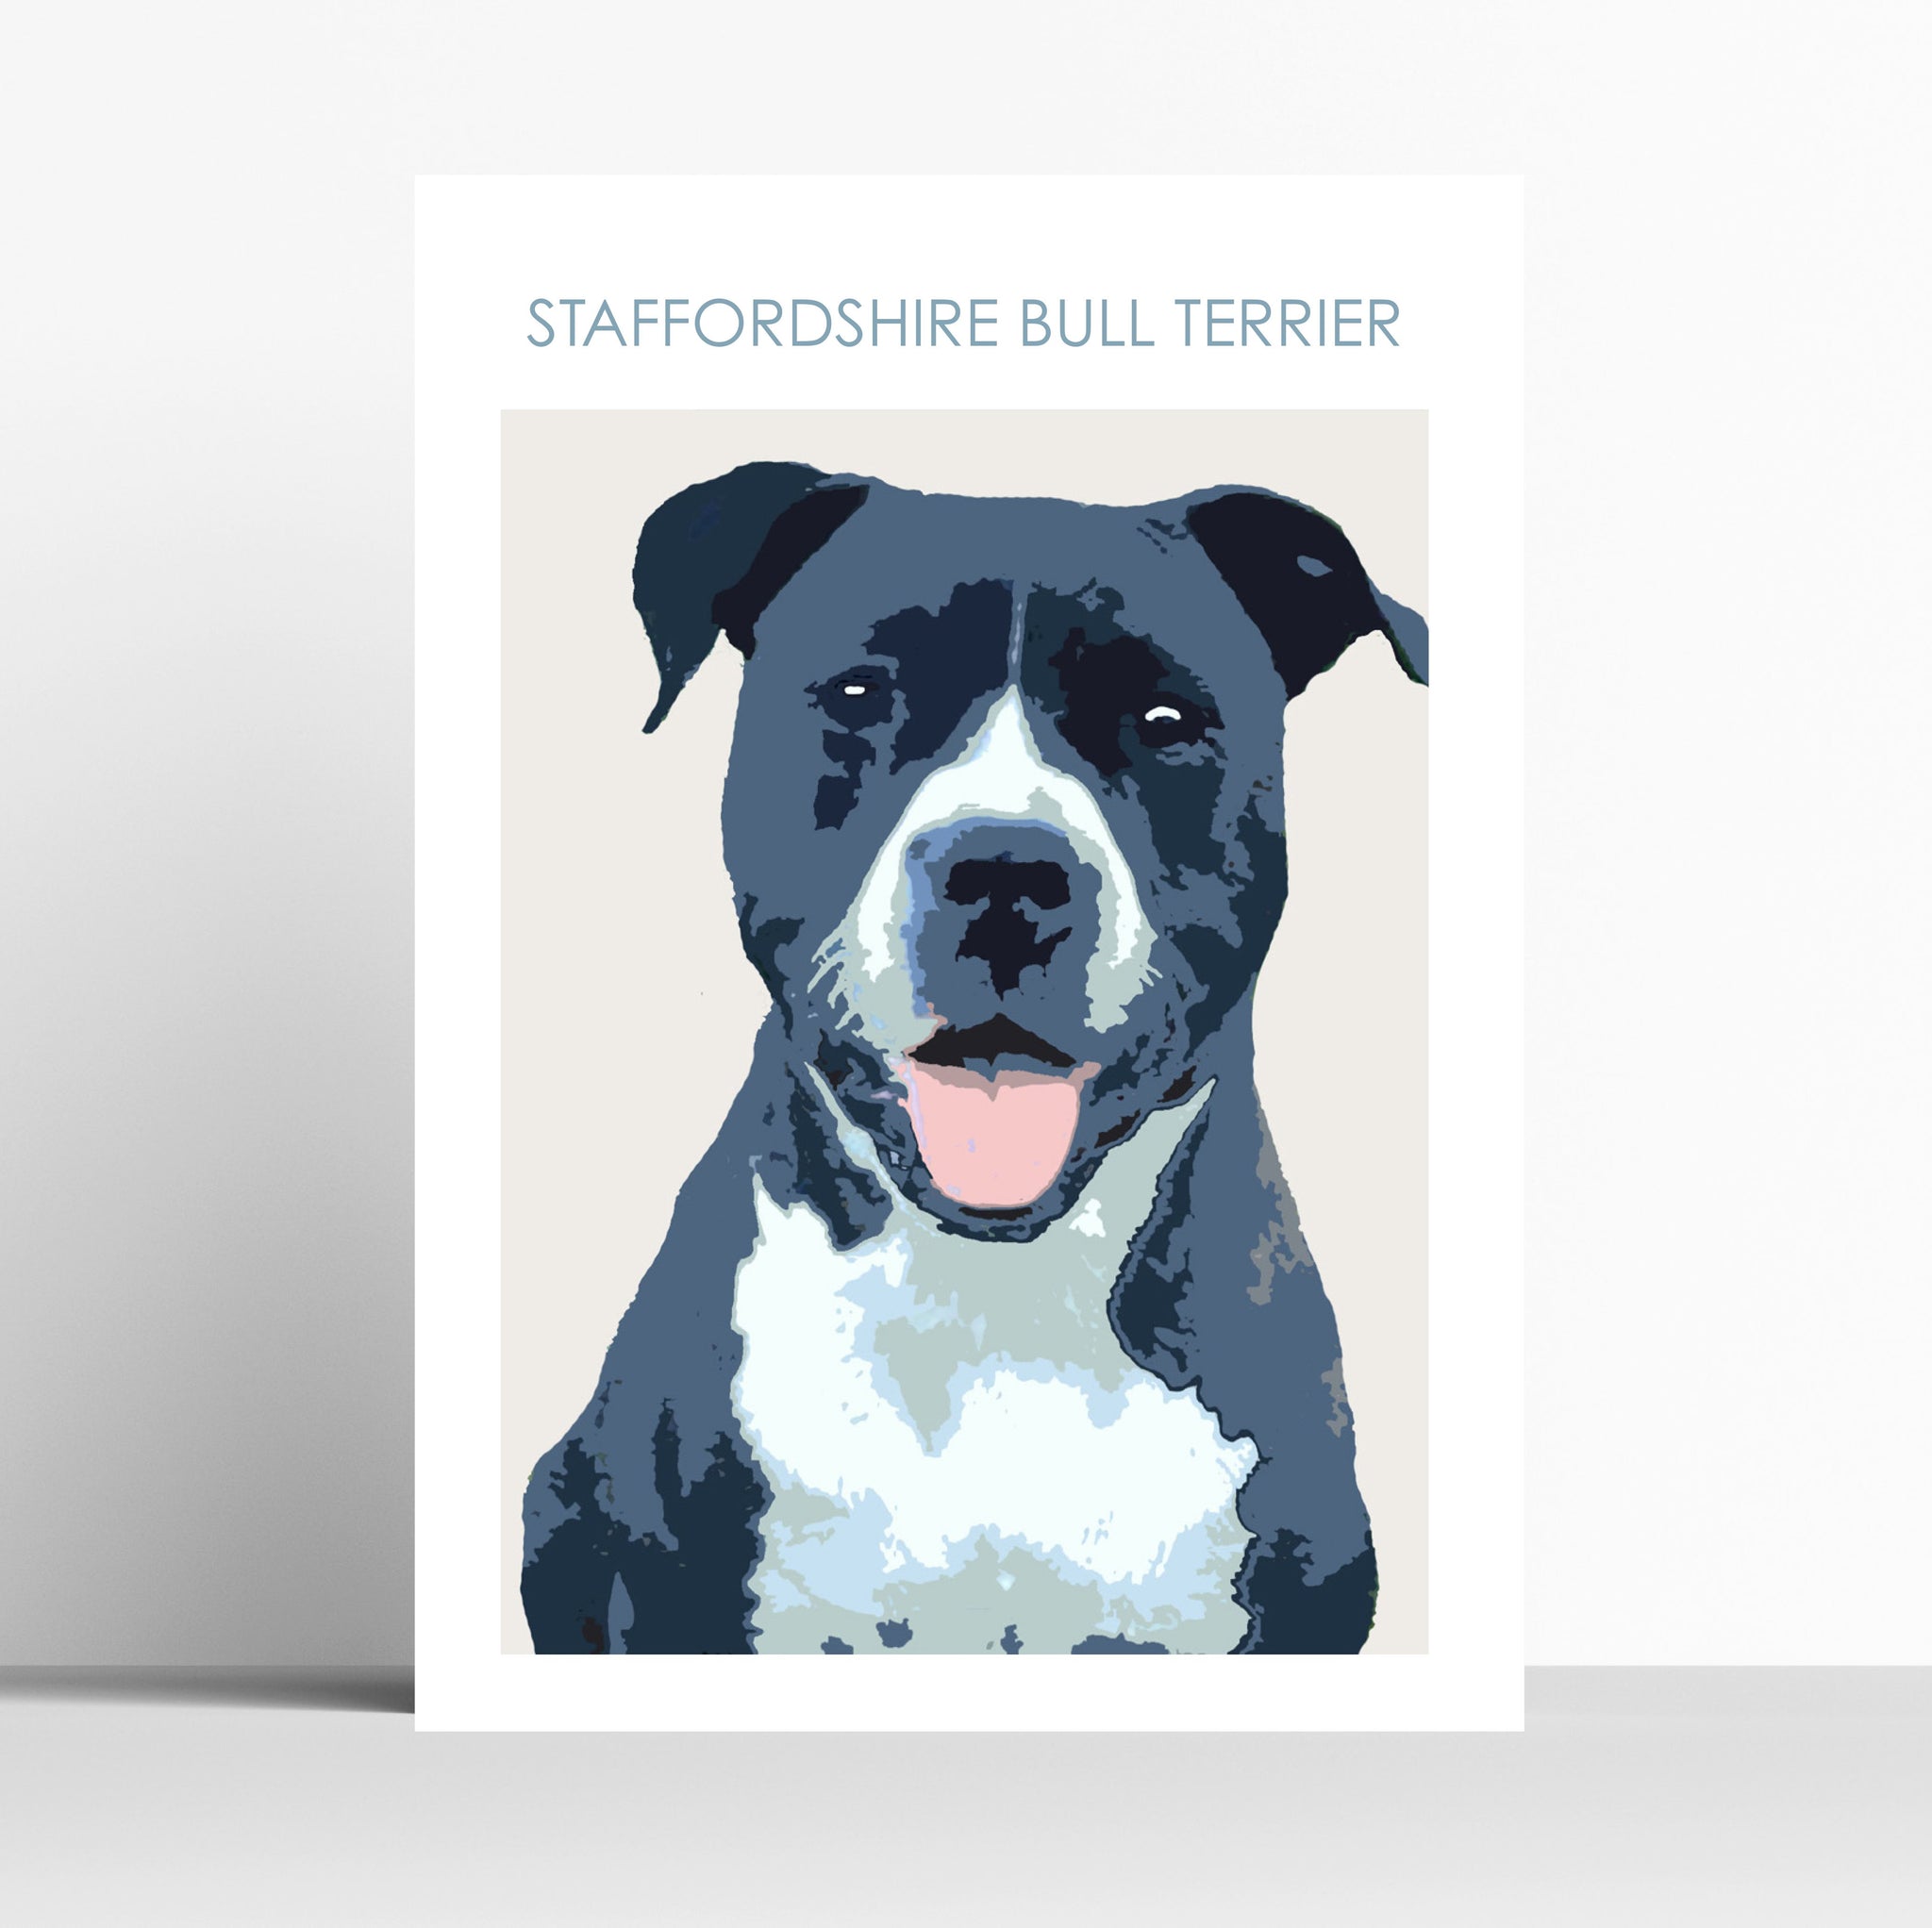 Black Stafordshire Bull Terrier Print